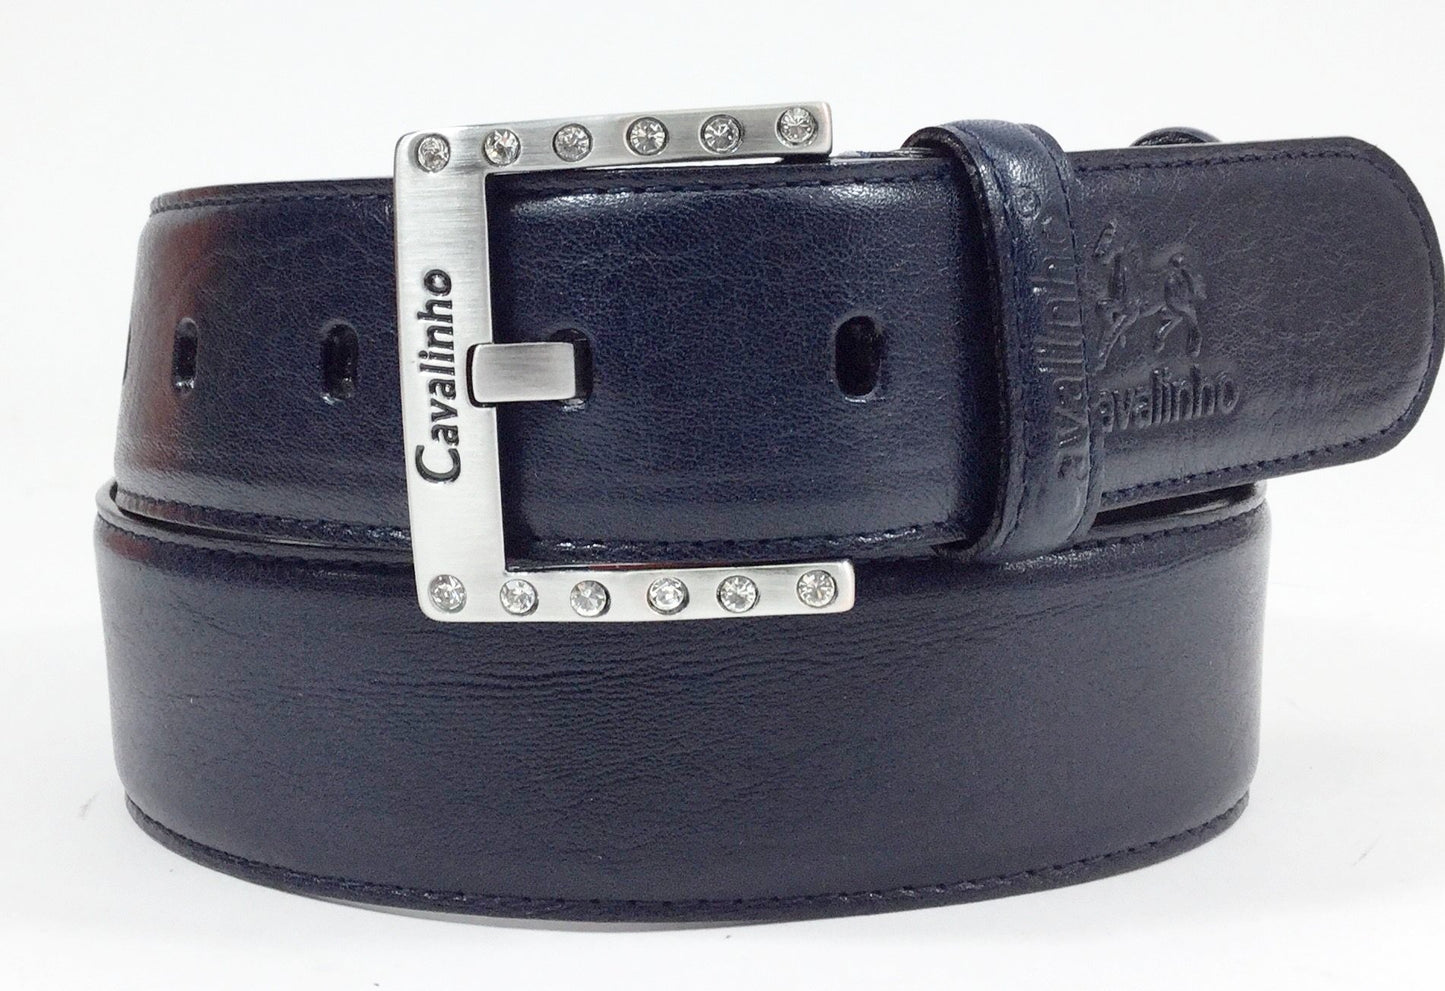 #color_ Black Gold | Cavalinho Classic Leather Belt - Black Gold - 58010908Navy2